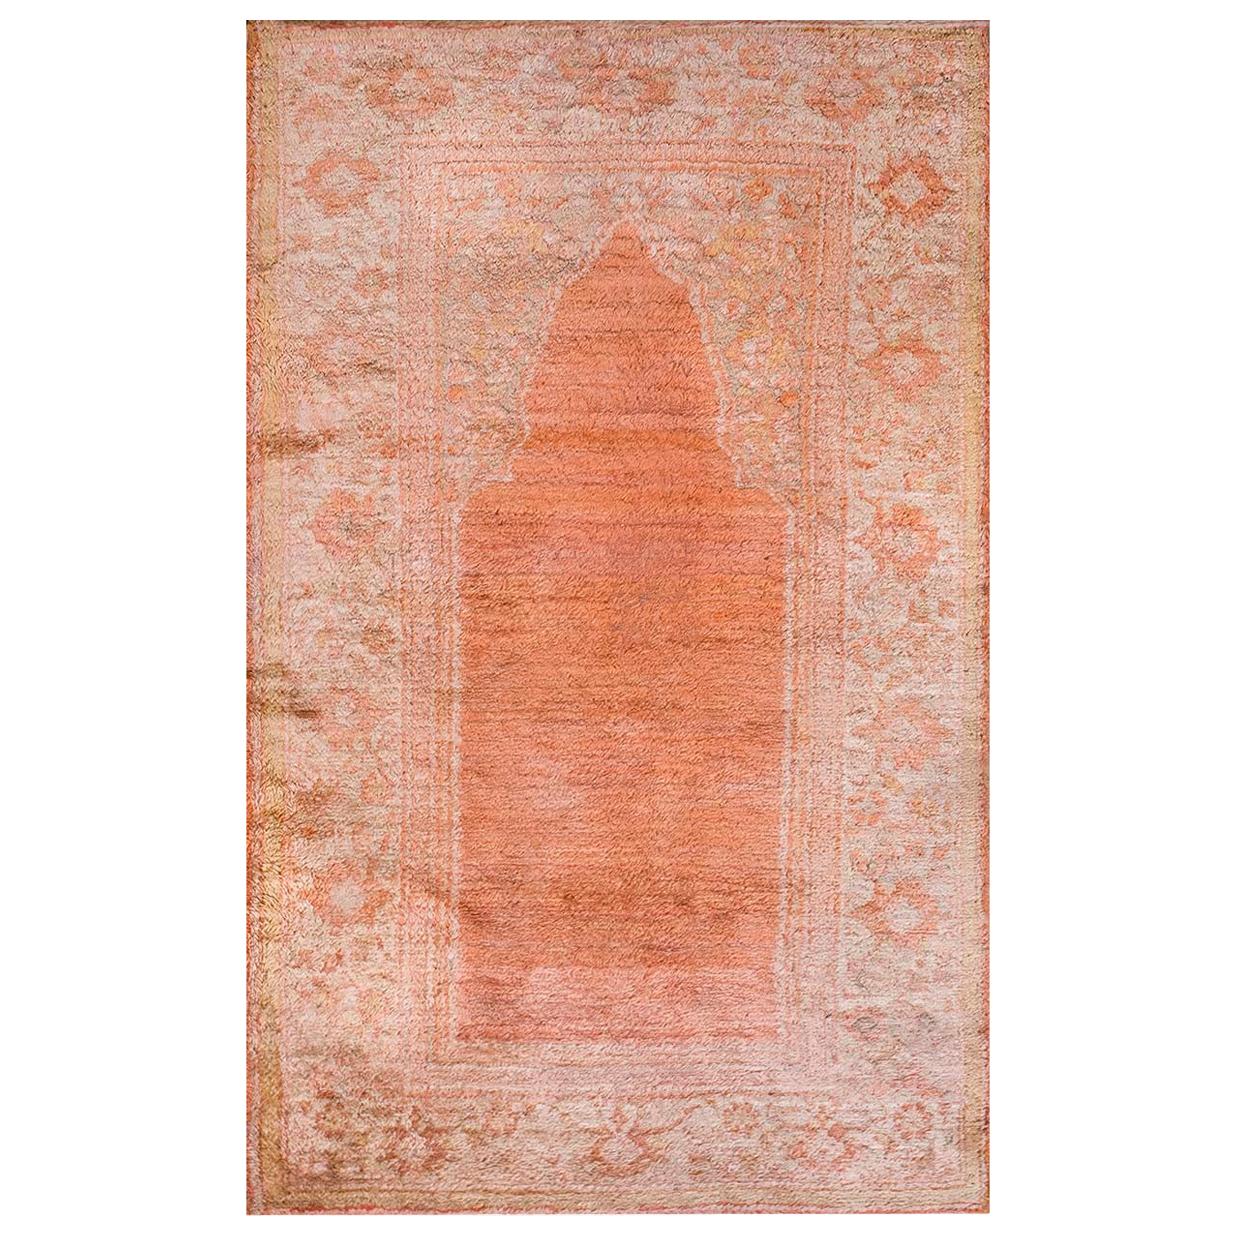 Türkischer Angora Oushak-Gebetteppich des 19. Jahrhunderts ( 3'10" x 5'10" - 117 x 178)